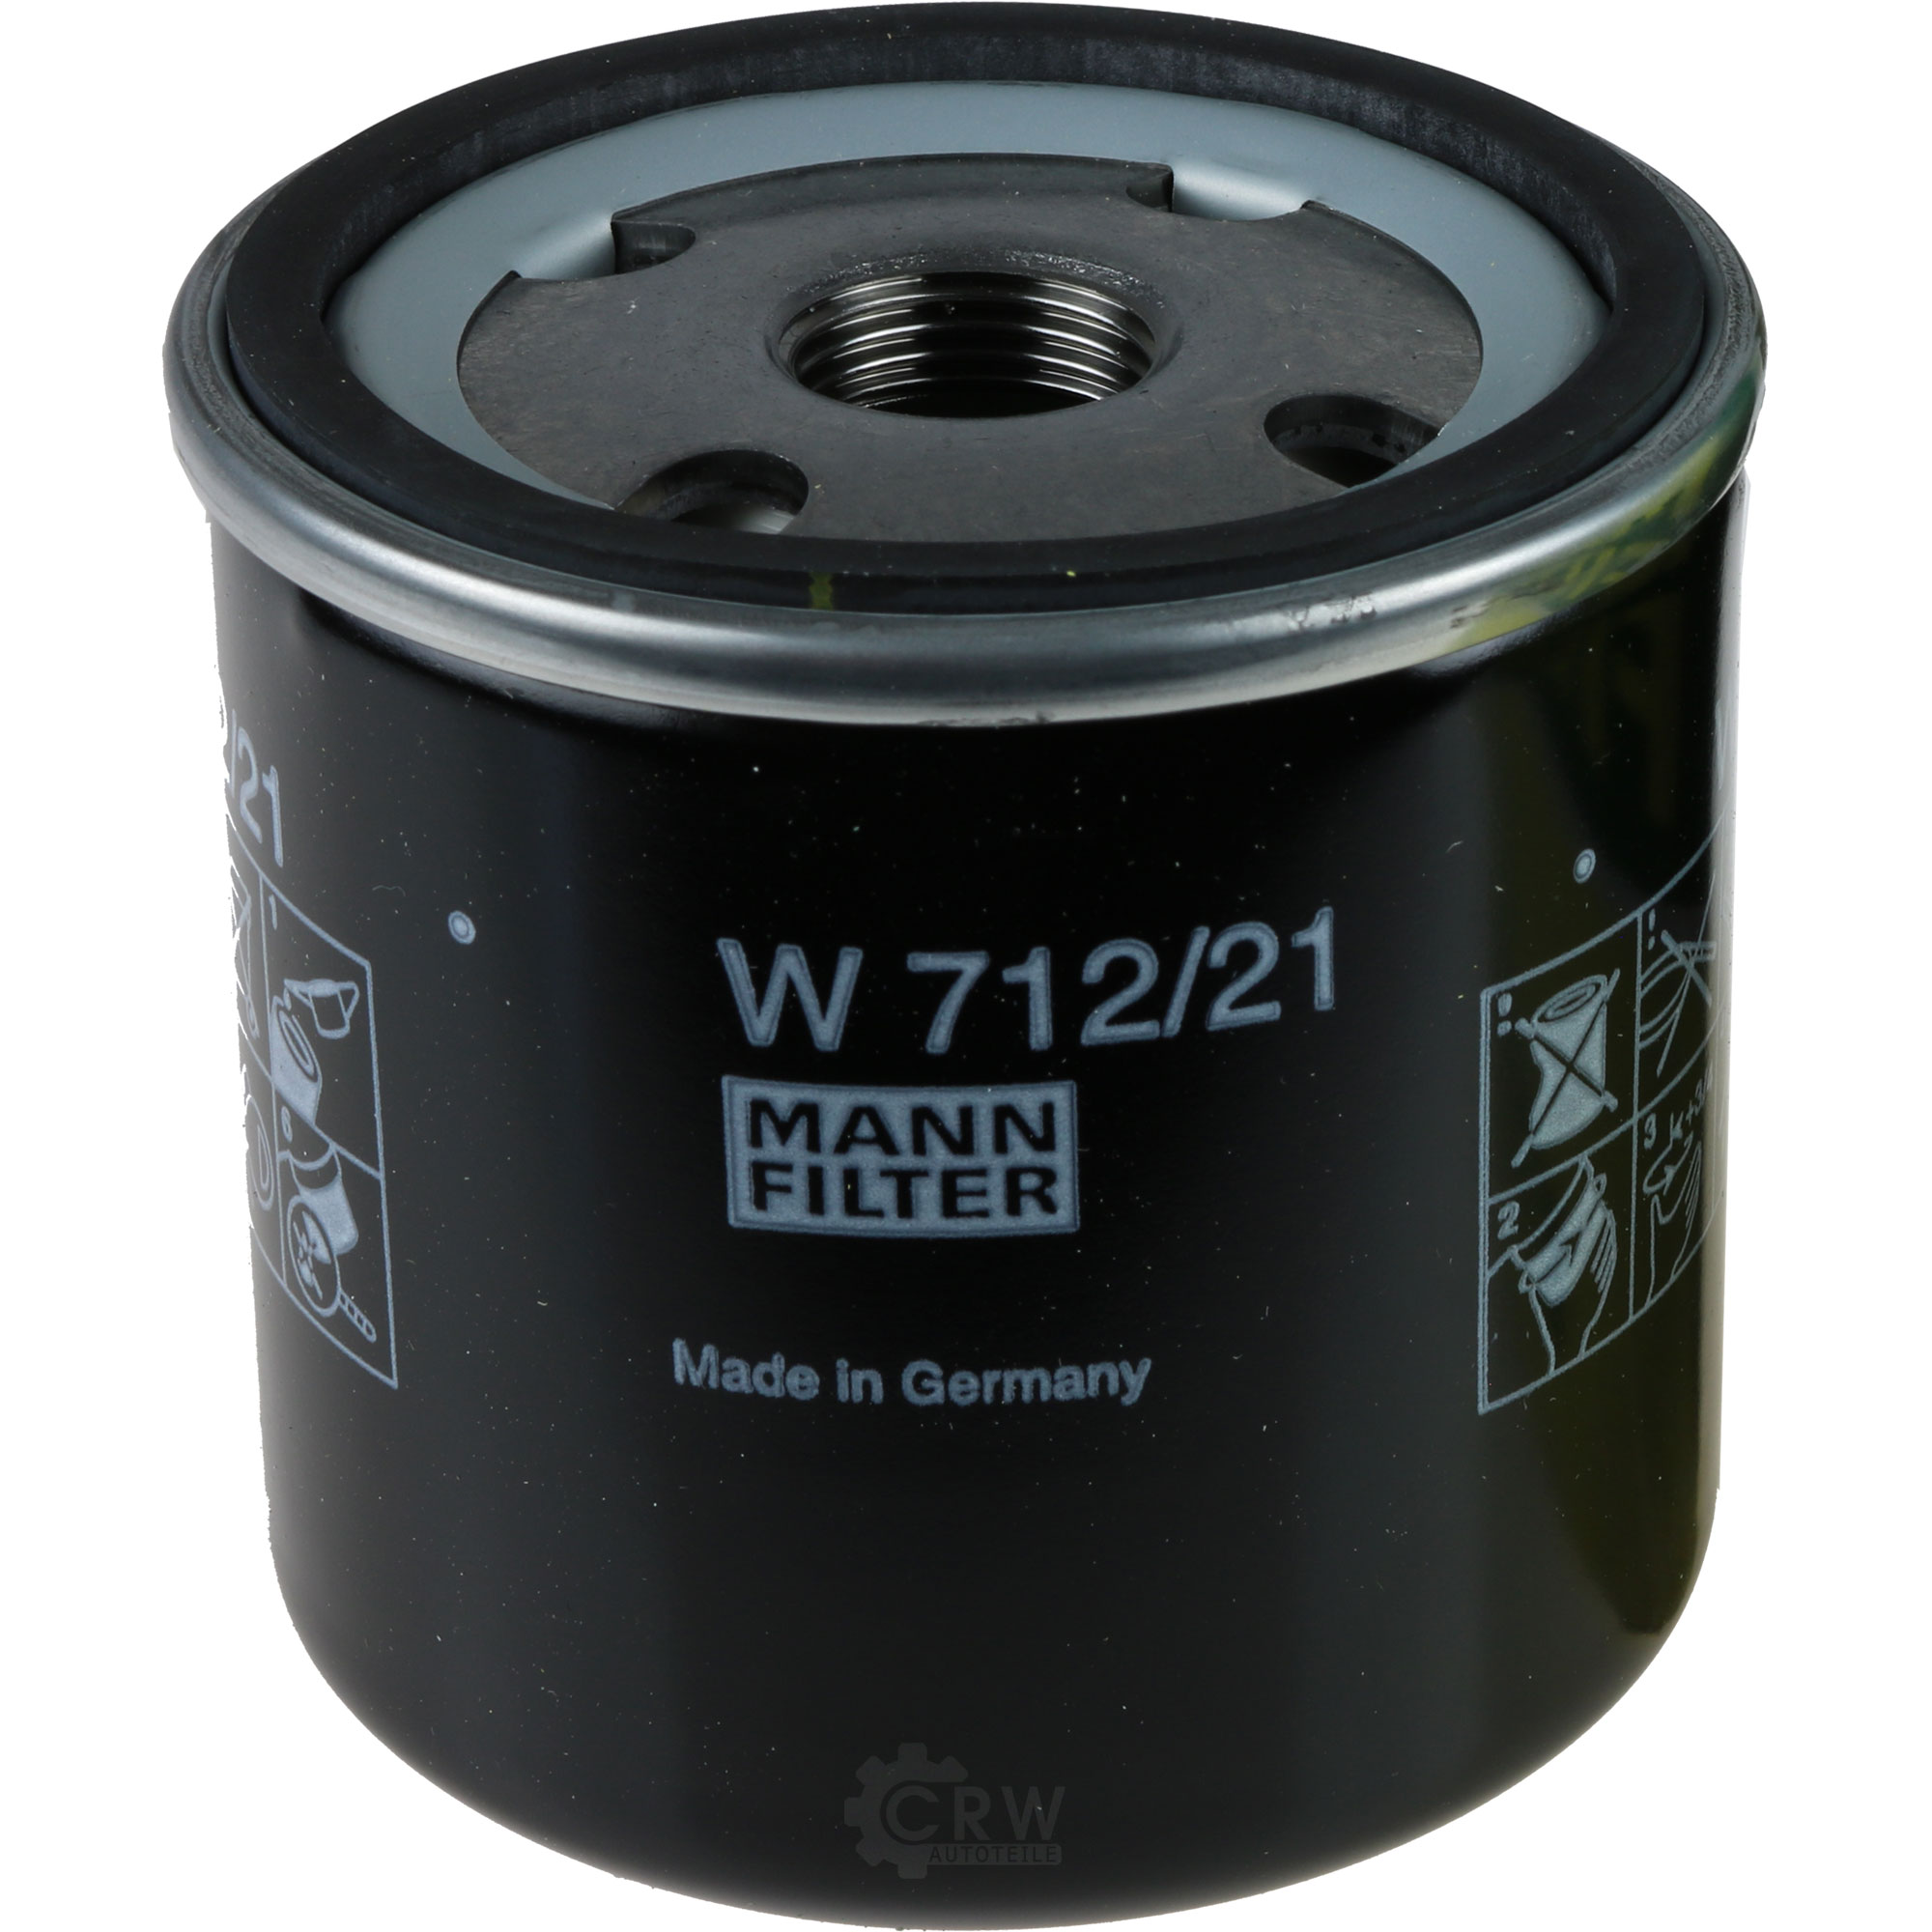 MANN-FILTER Ölfilter W 712/21 Oil Filter